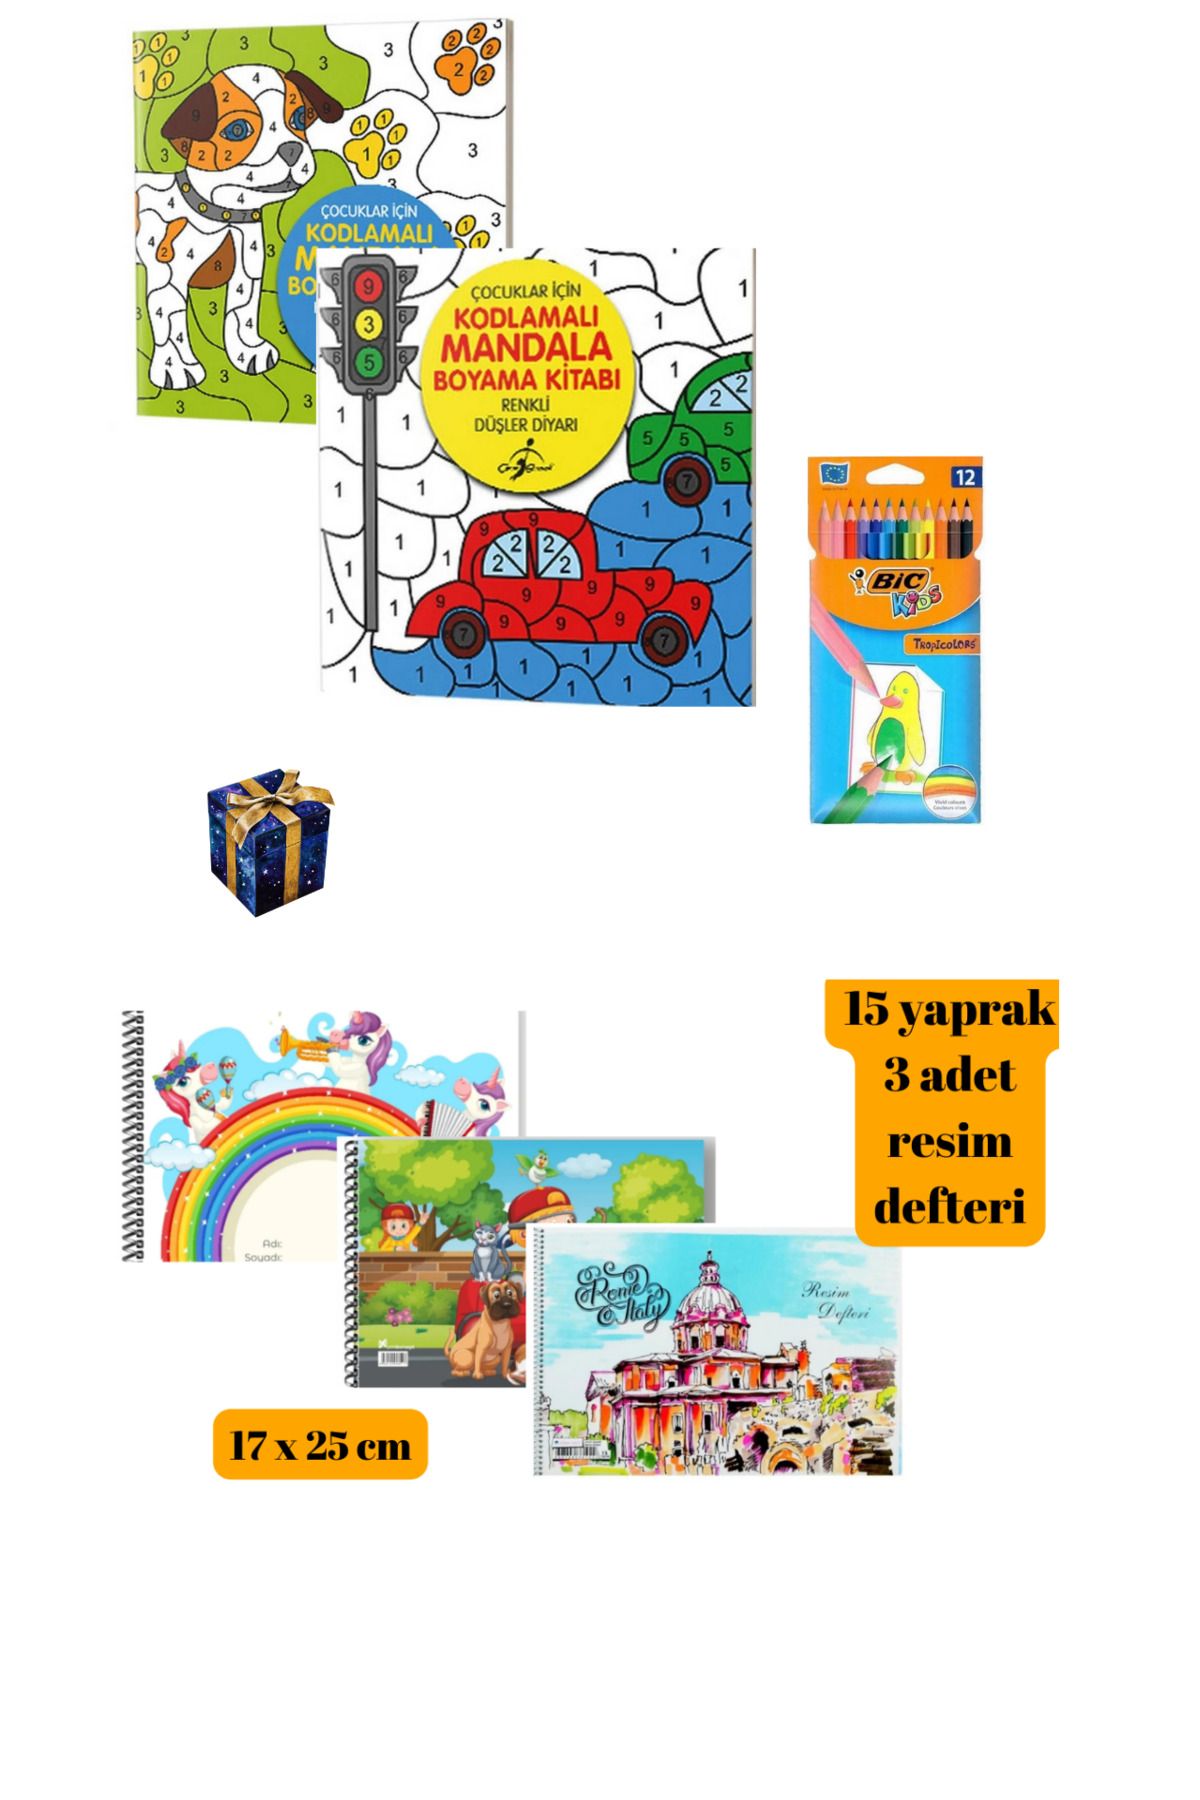 Bic Çocuklar için Kodlamalı Mandala Boyama Kitabı 2 Adet 12 Renk Bic Kuru Boya Kalemi ve 3 Resim Defteri